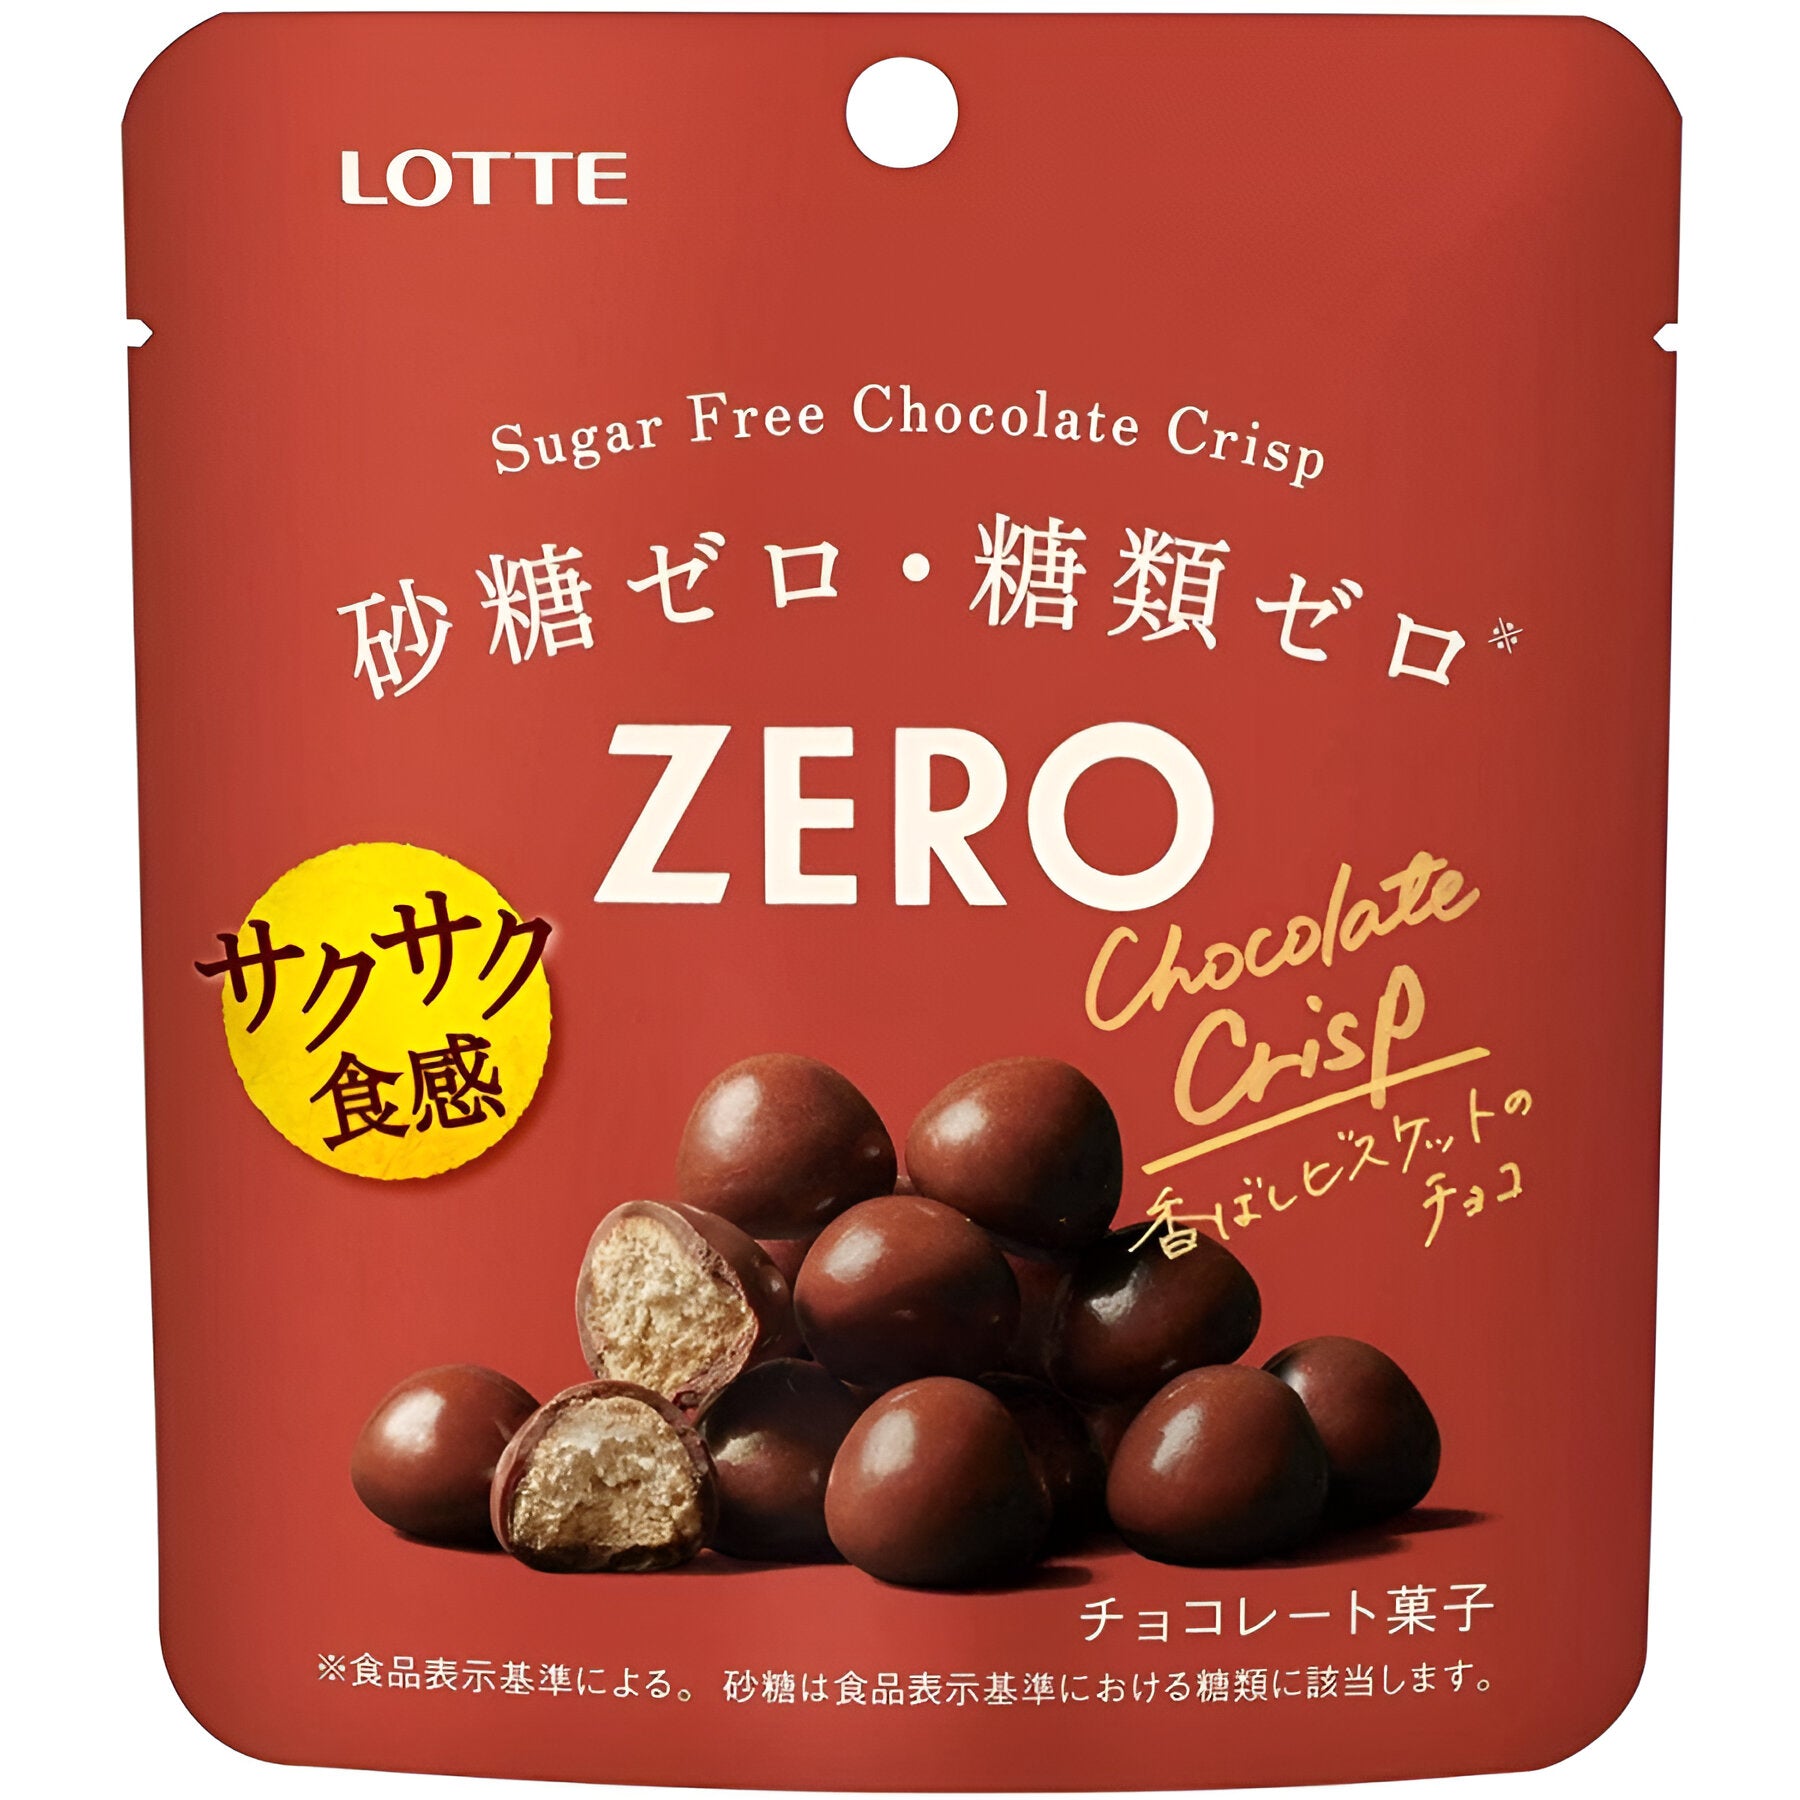 무설탕 초콜릿 크리스프 - 28G